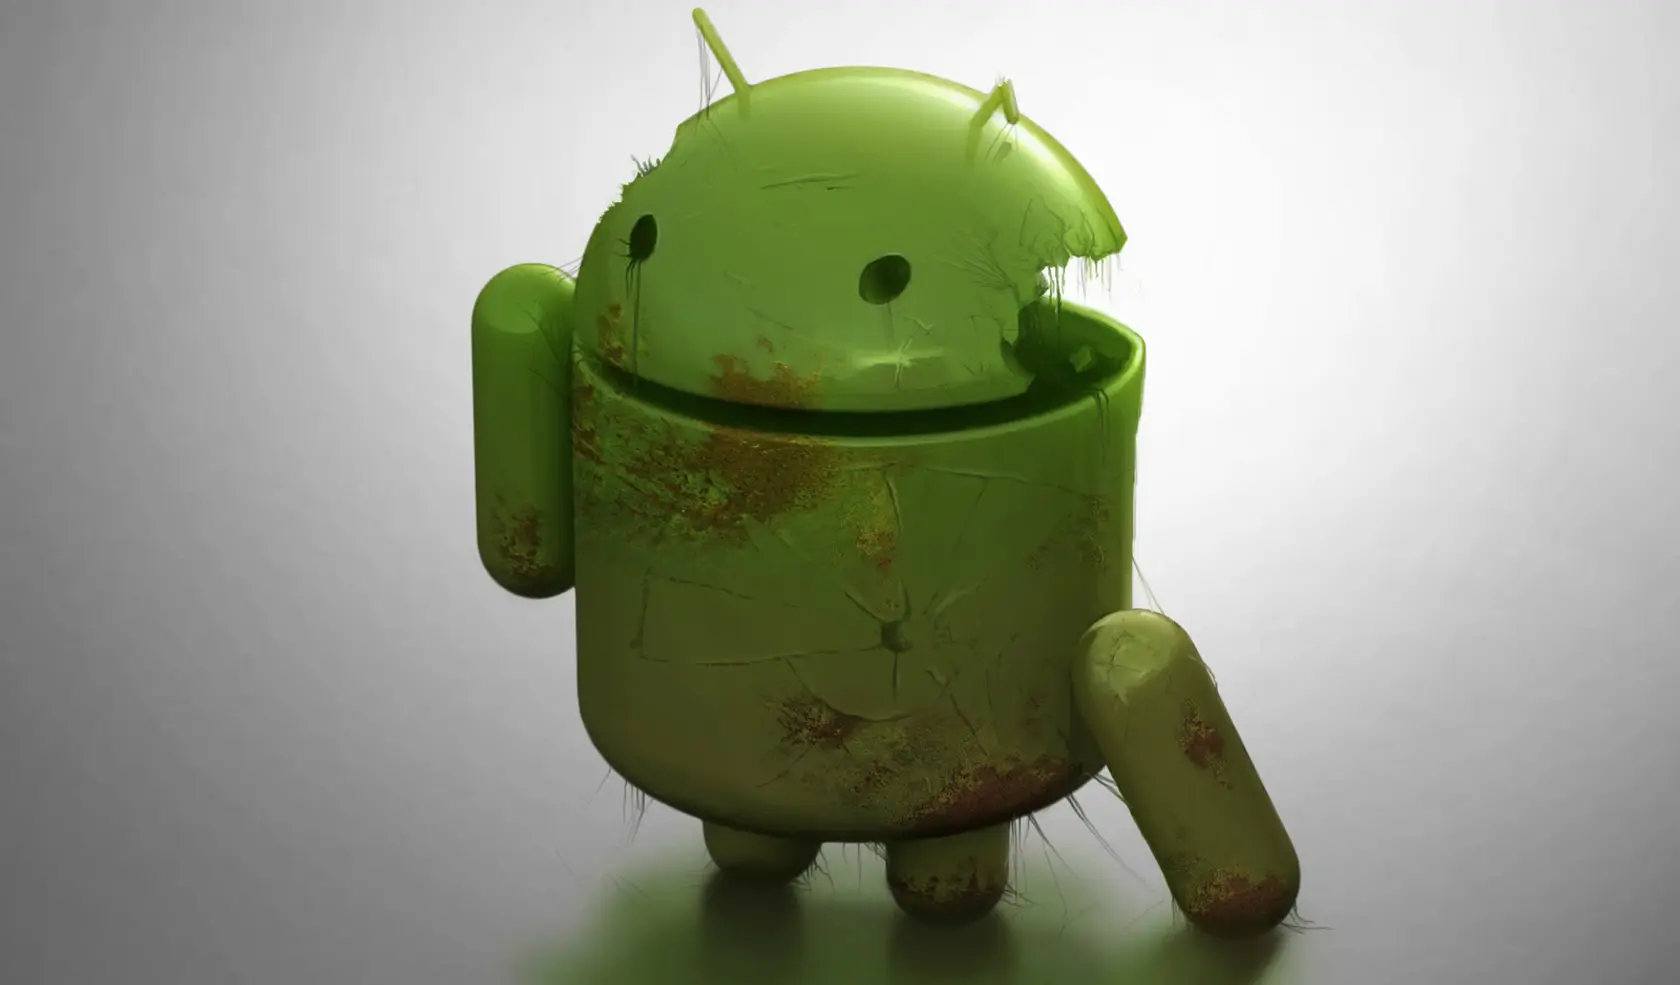 Descubren el más grande fallo de seguridad en Android